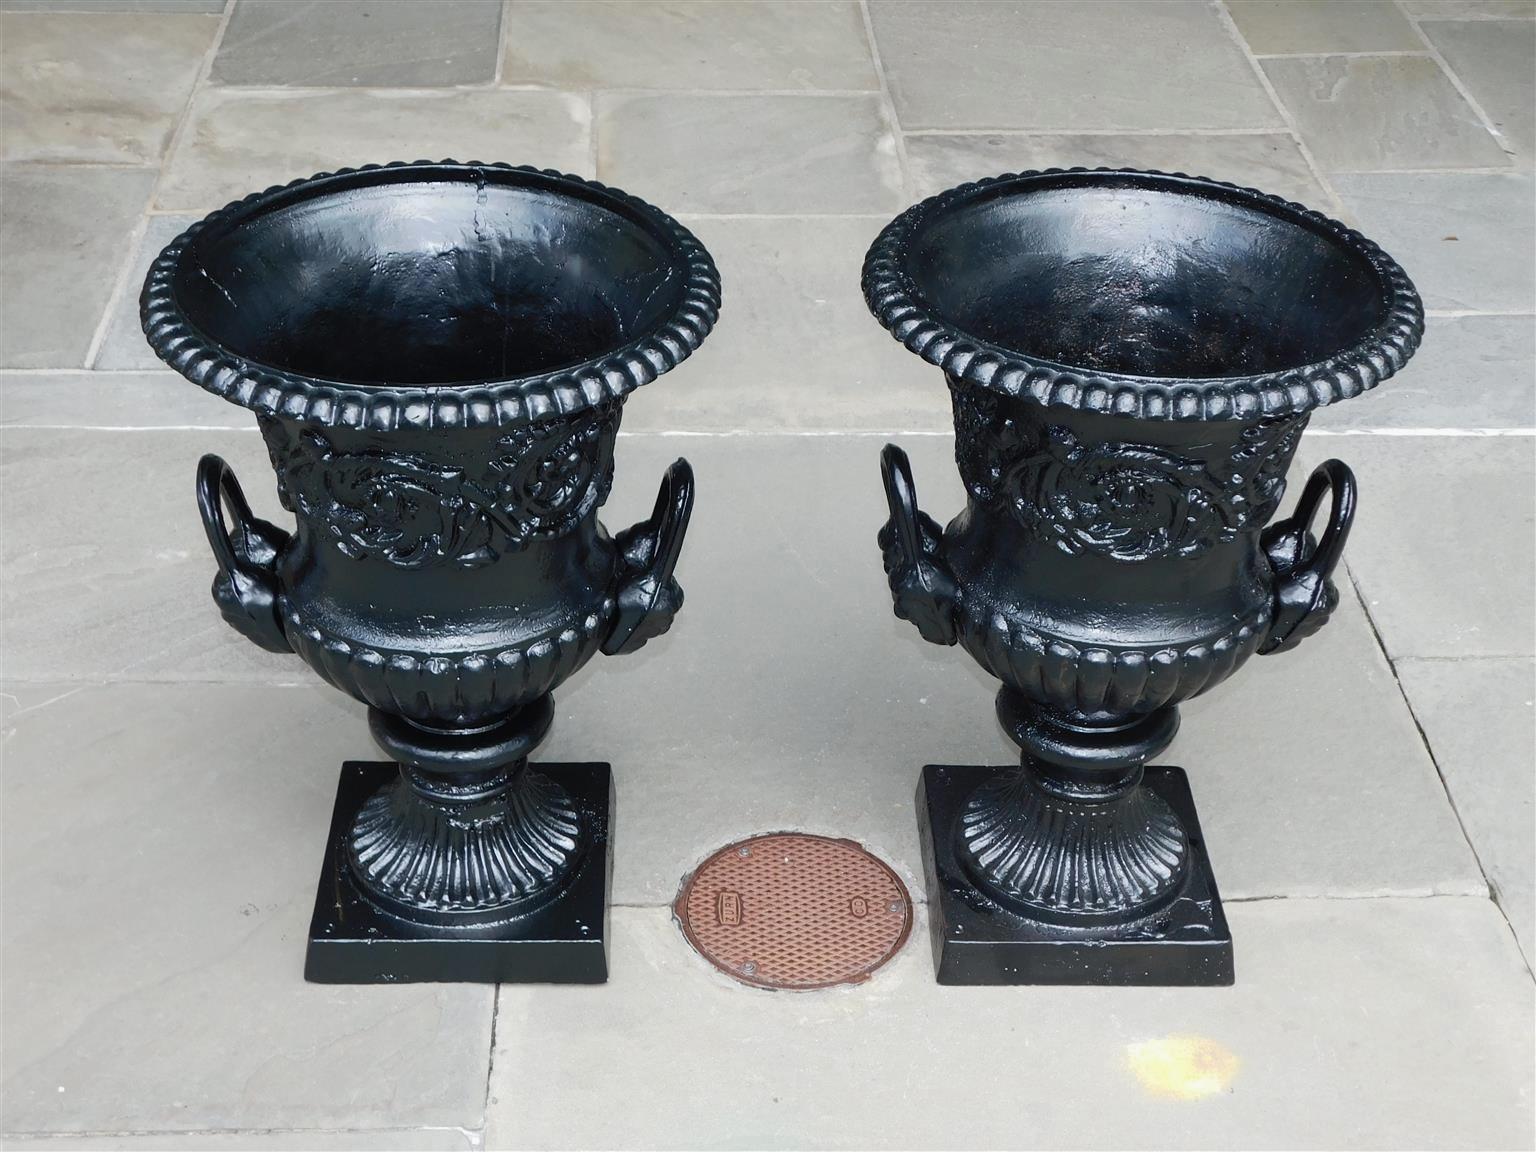 Paire d'urnes figuratives anglaises en fonte et en forme de campane peinte, avec une frise de fleurs et de médaillons entrelacés, des doubles poignées latérales figuratives flanquées, un motif à godrons, et terminées par des socles circulaires